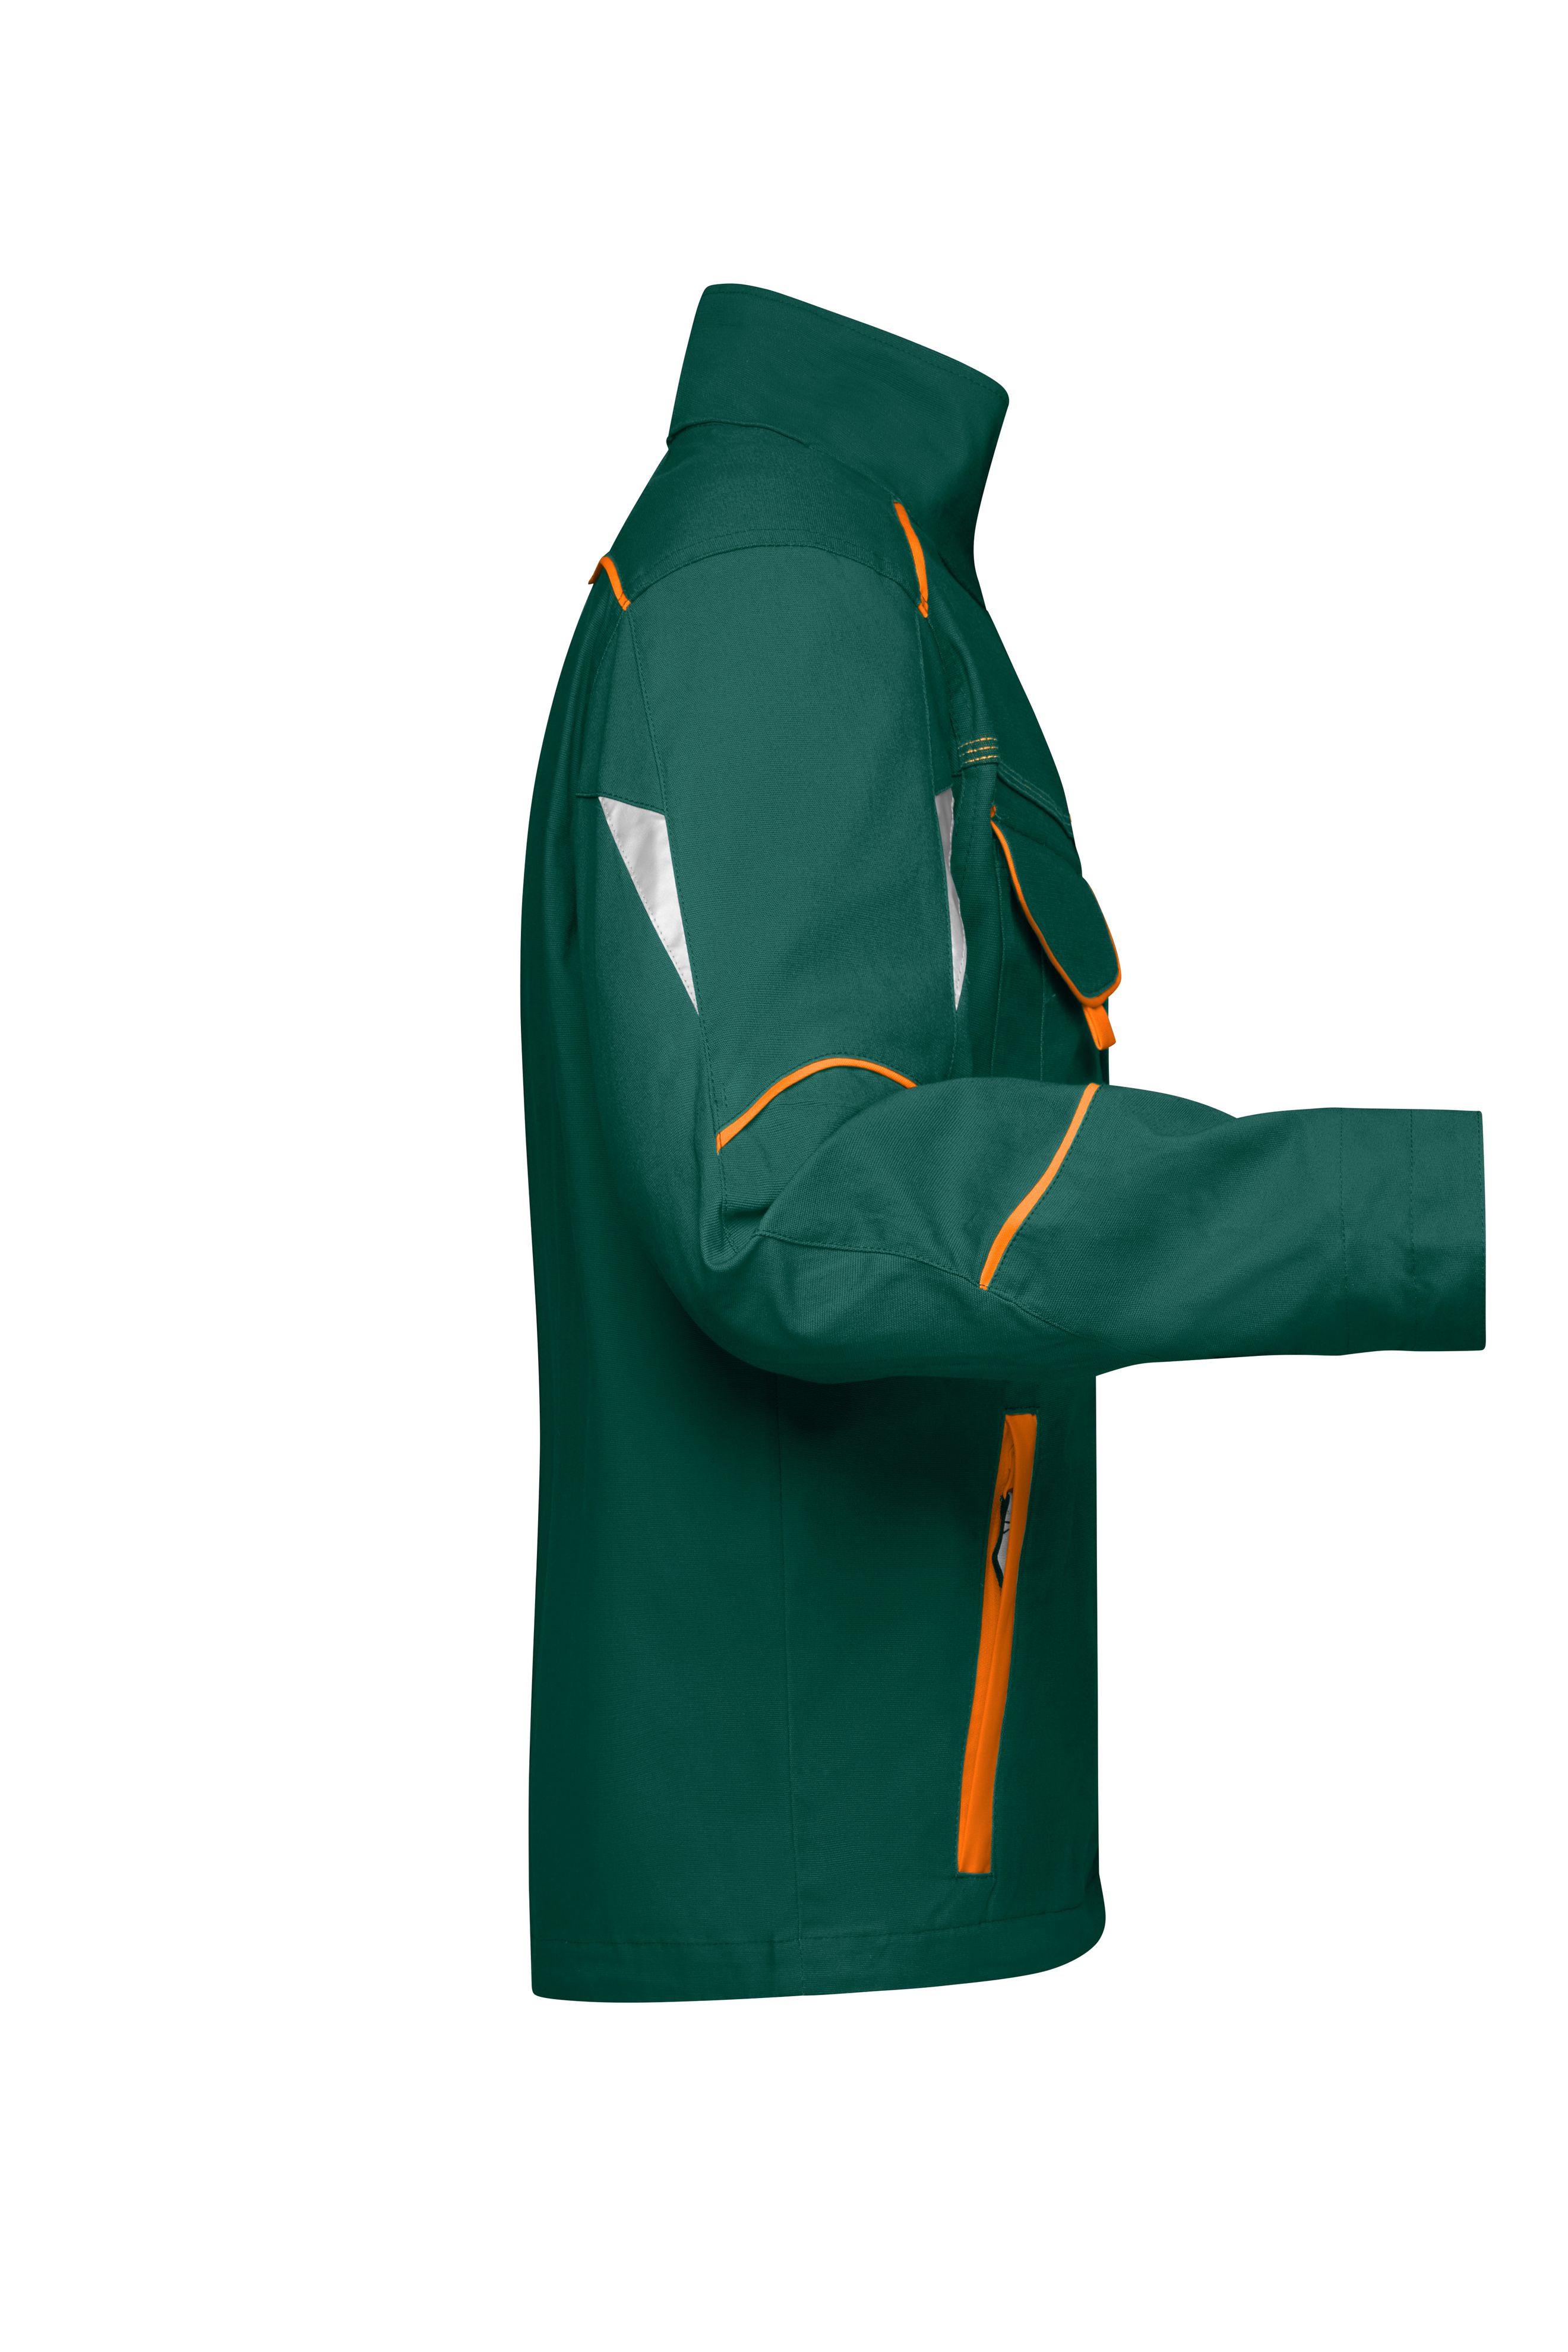 Workwear Jacket - COLOR - JN849 Funktionelle Jacke im sportlichen Look mit hochwertigen Details